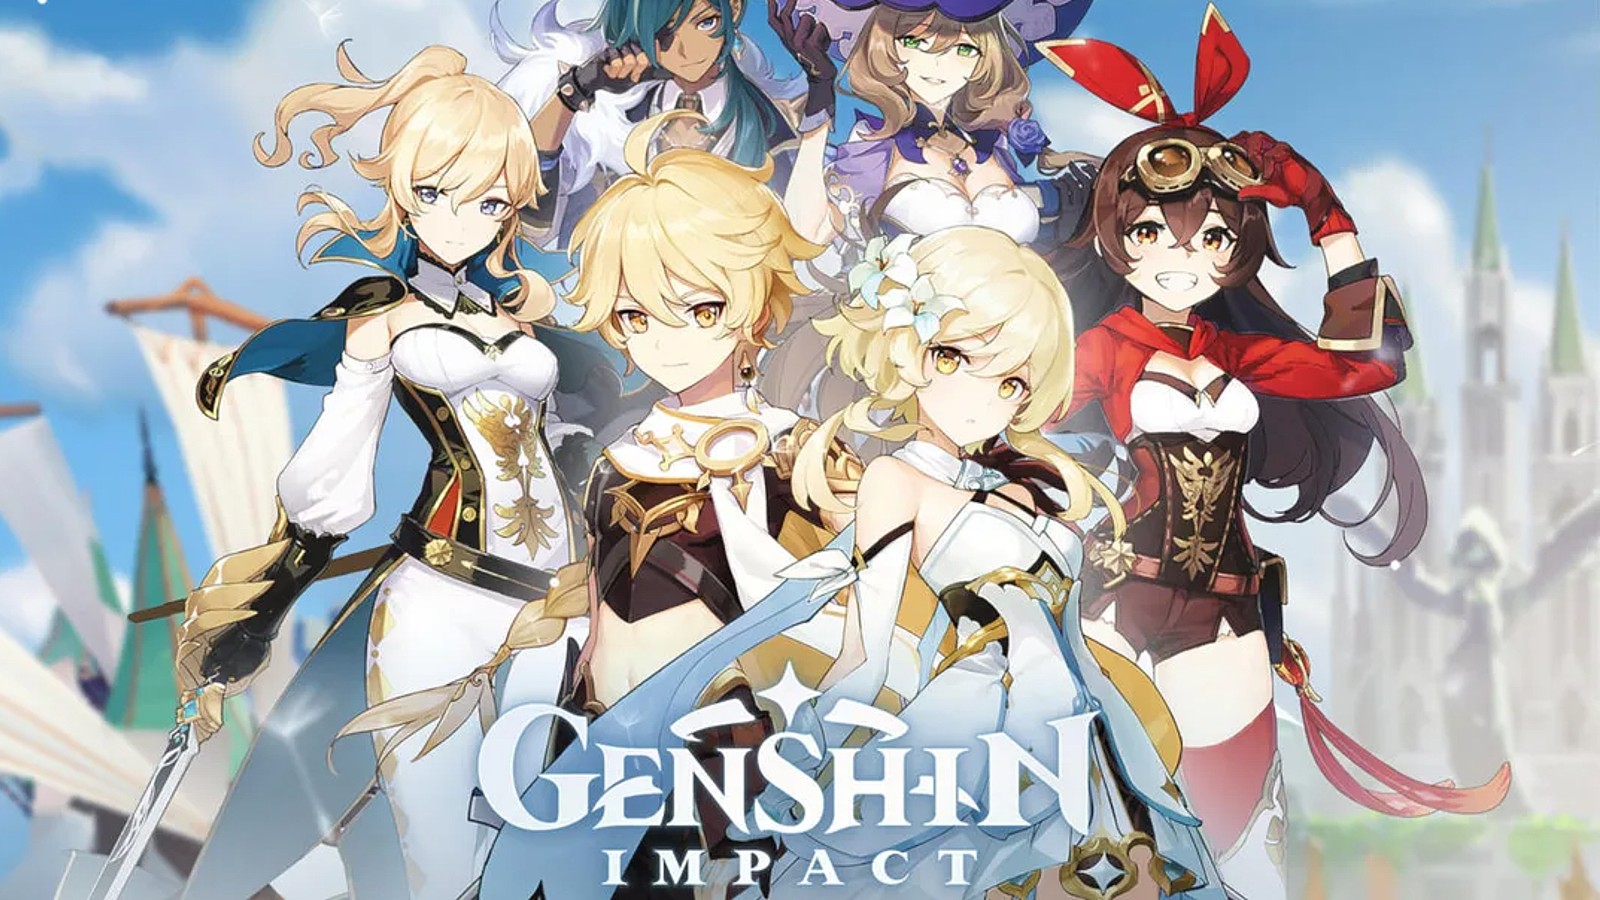 Titelbild von Genshin Impact mit vielen Charakteren